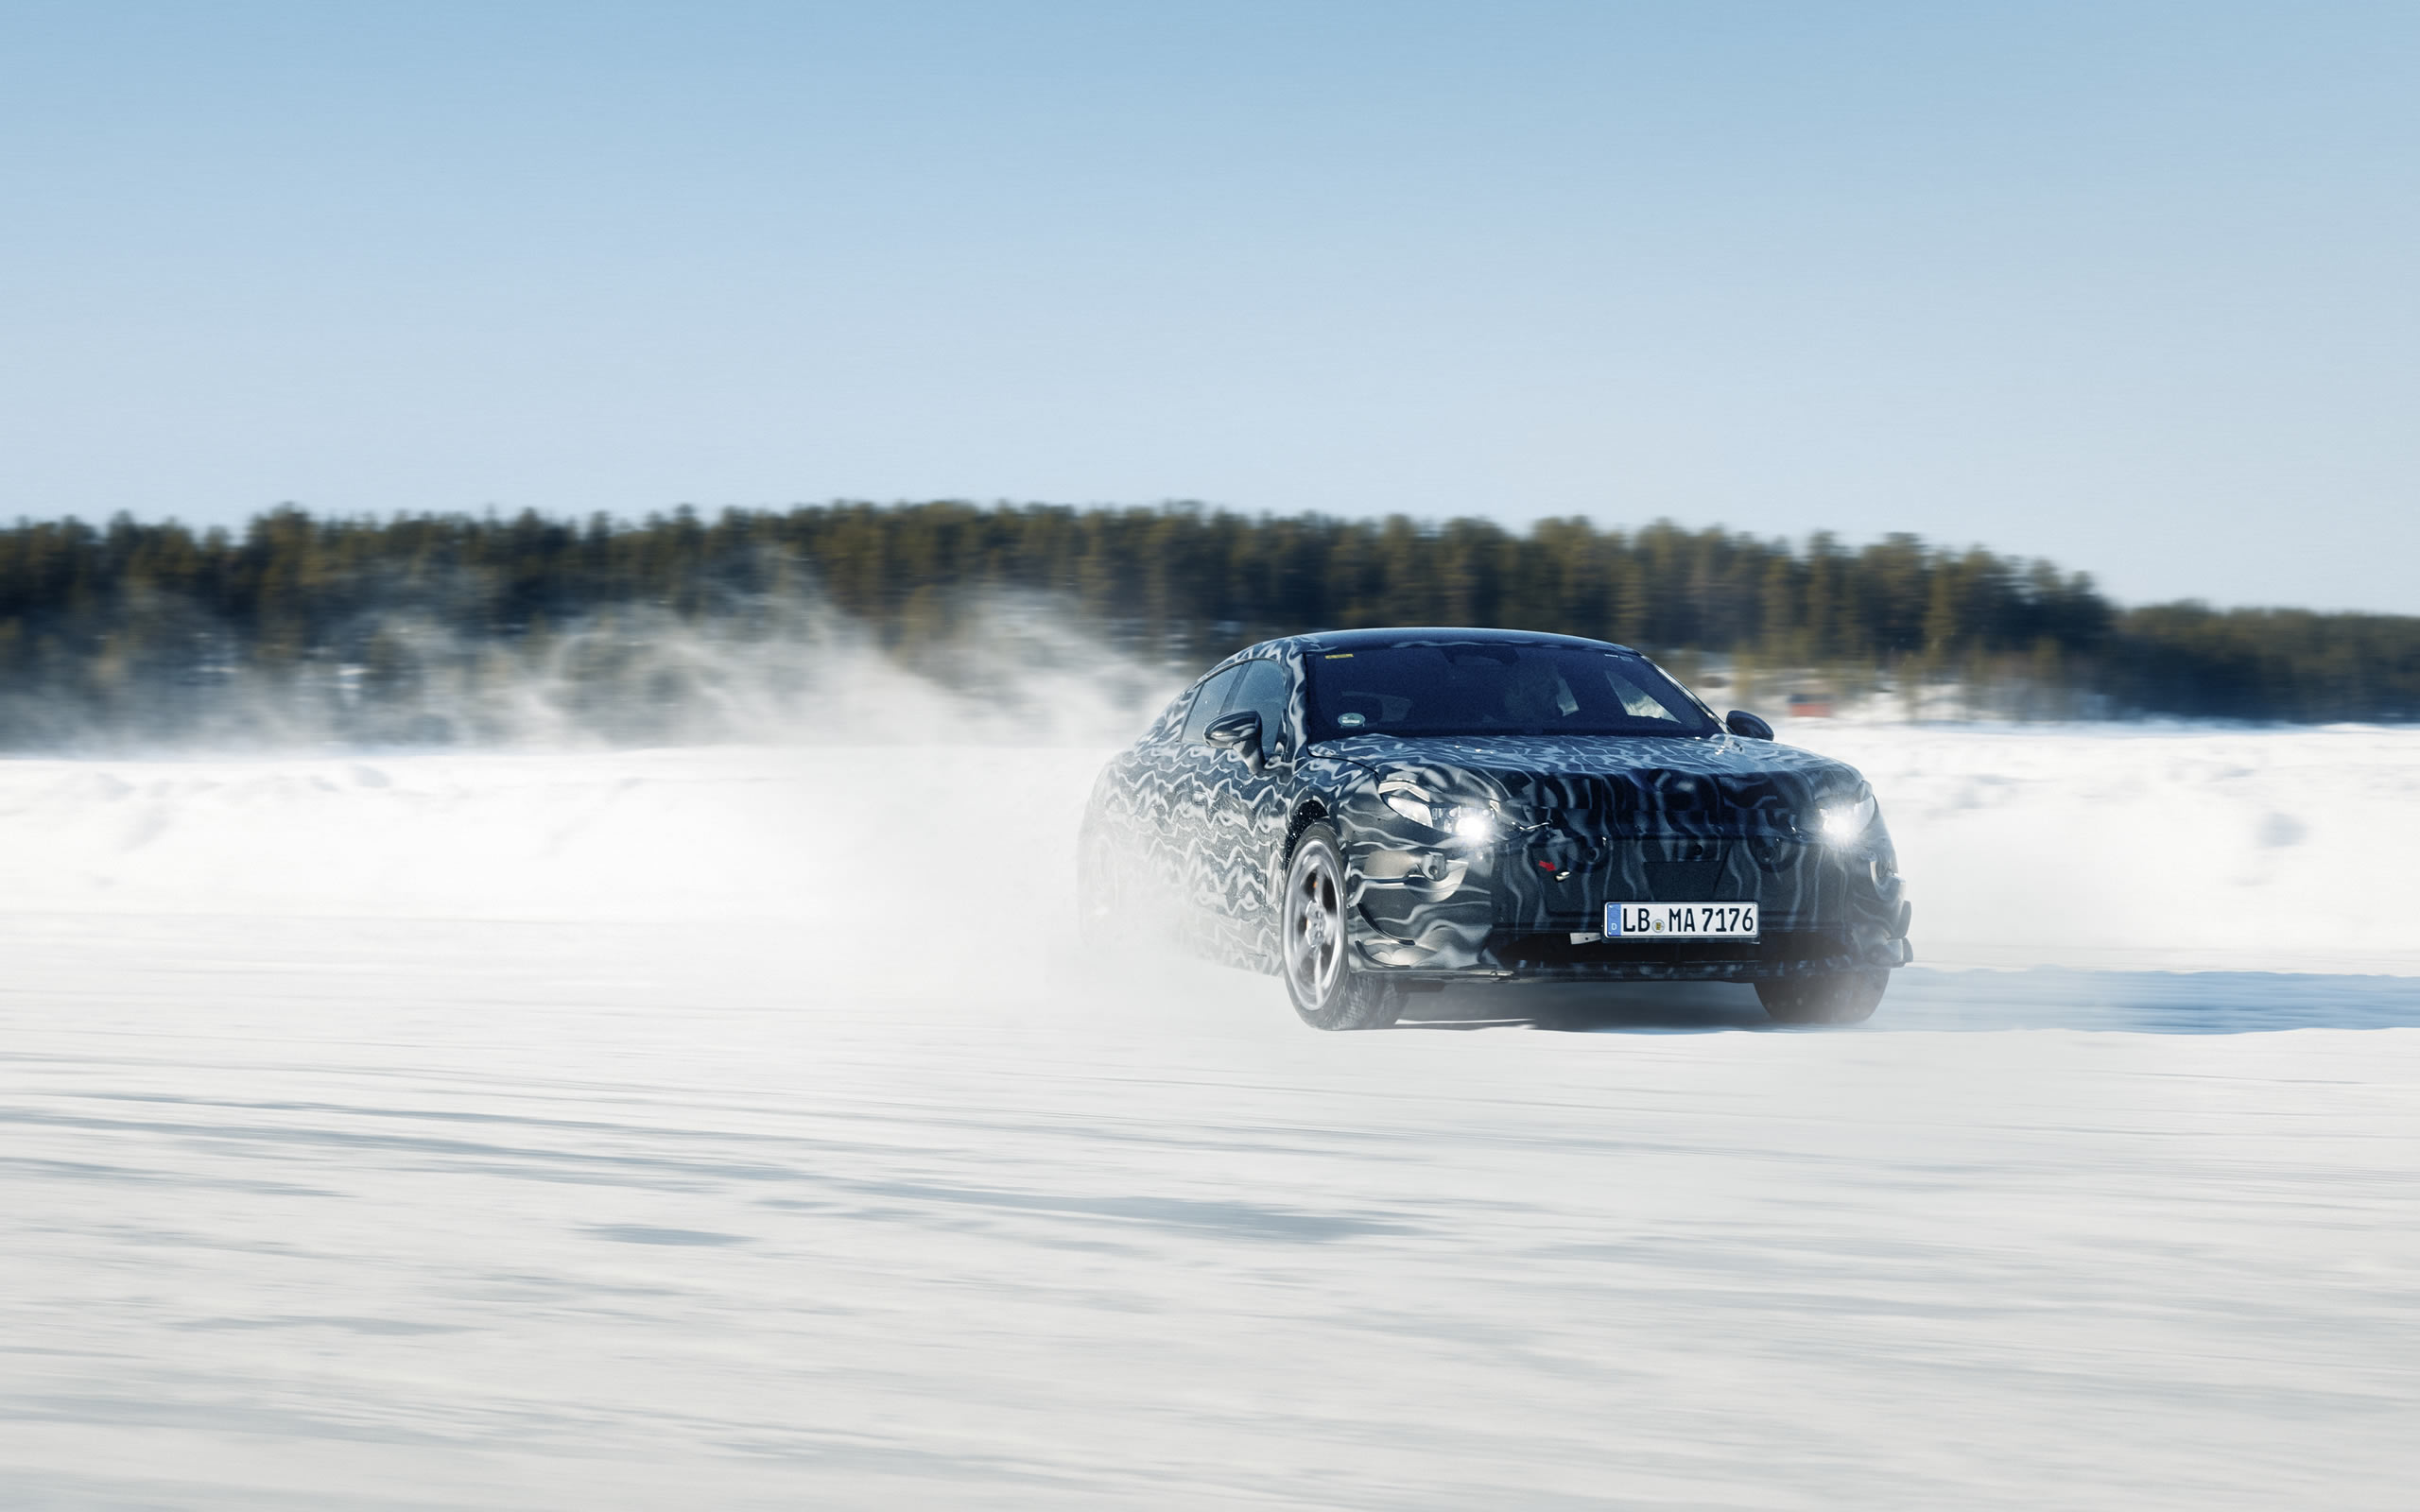 Zimné testovanie budúcej elektrickej výkonnostnej platformy AMG.EA vo Švédsku